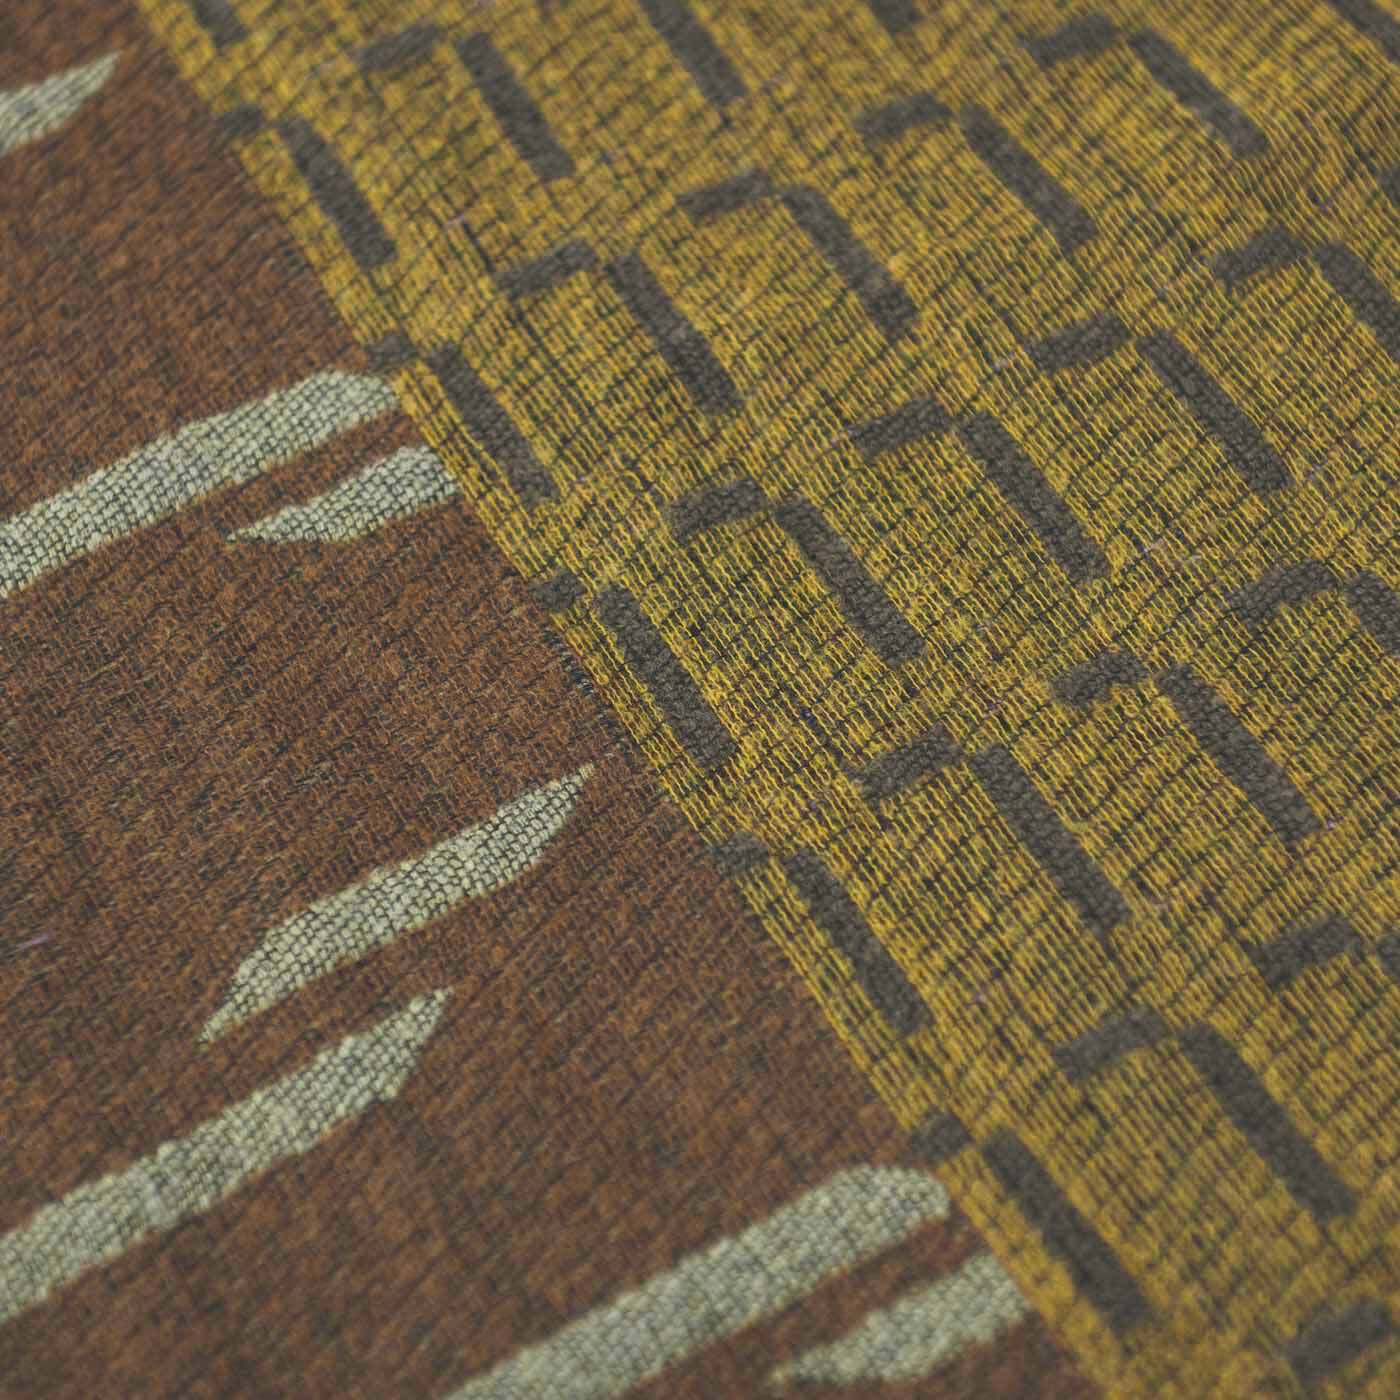 ＆Stories|テキスタイルデザイナーと作った 播州ジャカード織のブークレストール〈ライラック色〉|テキスタイルデザイナー・梶原加奈子さんの独創的なデザインを播州織で緻密に再現。織物工房さんの高い技術で見事に織り上げられています。